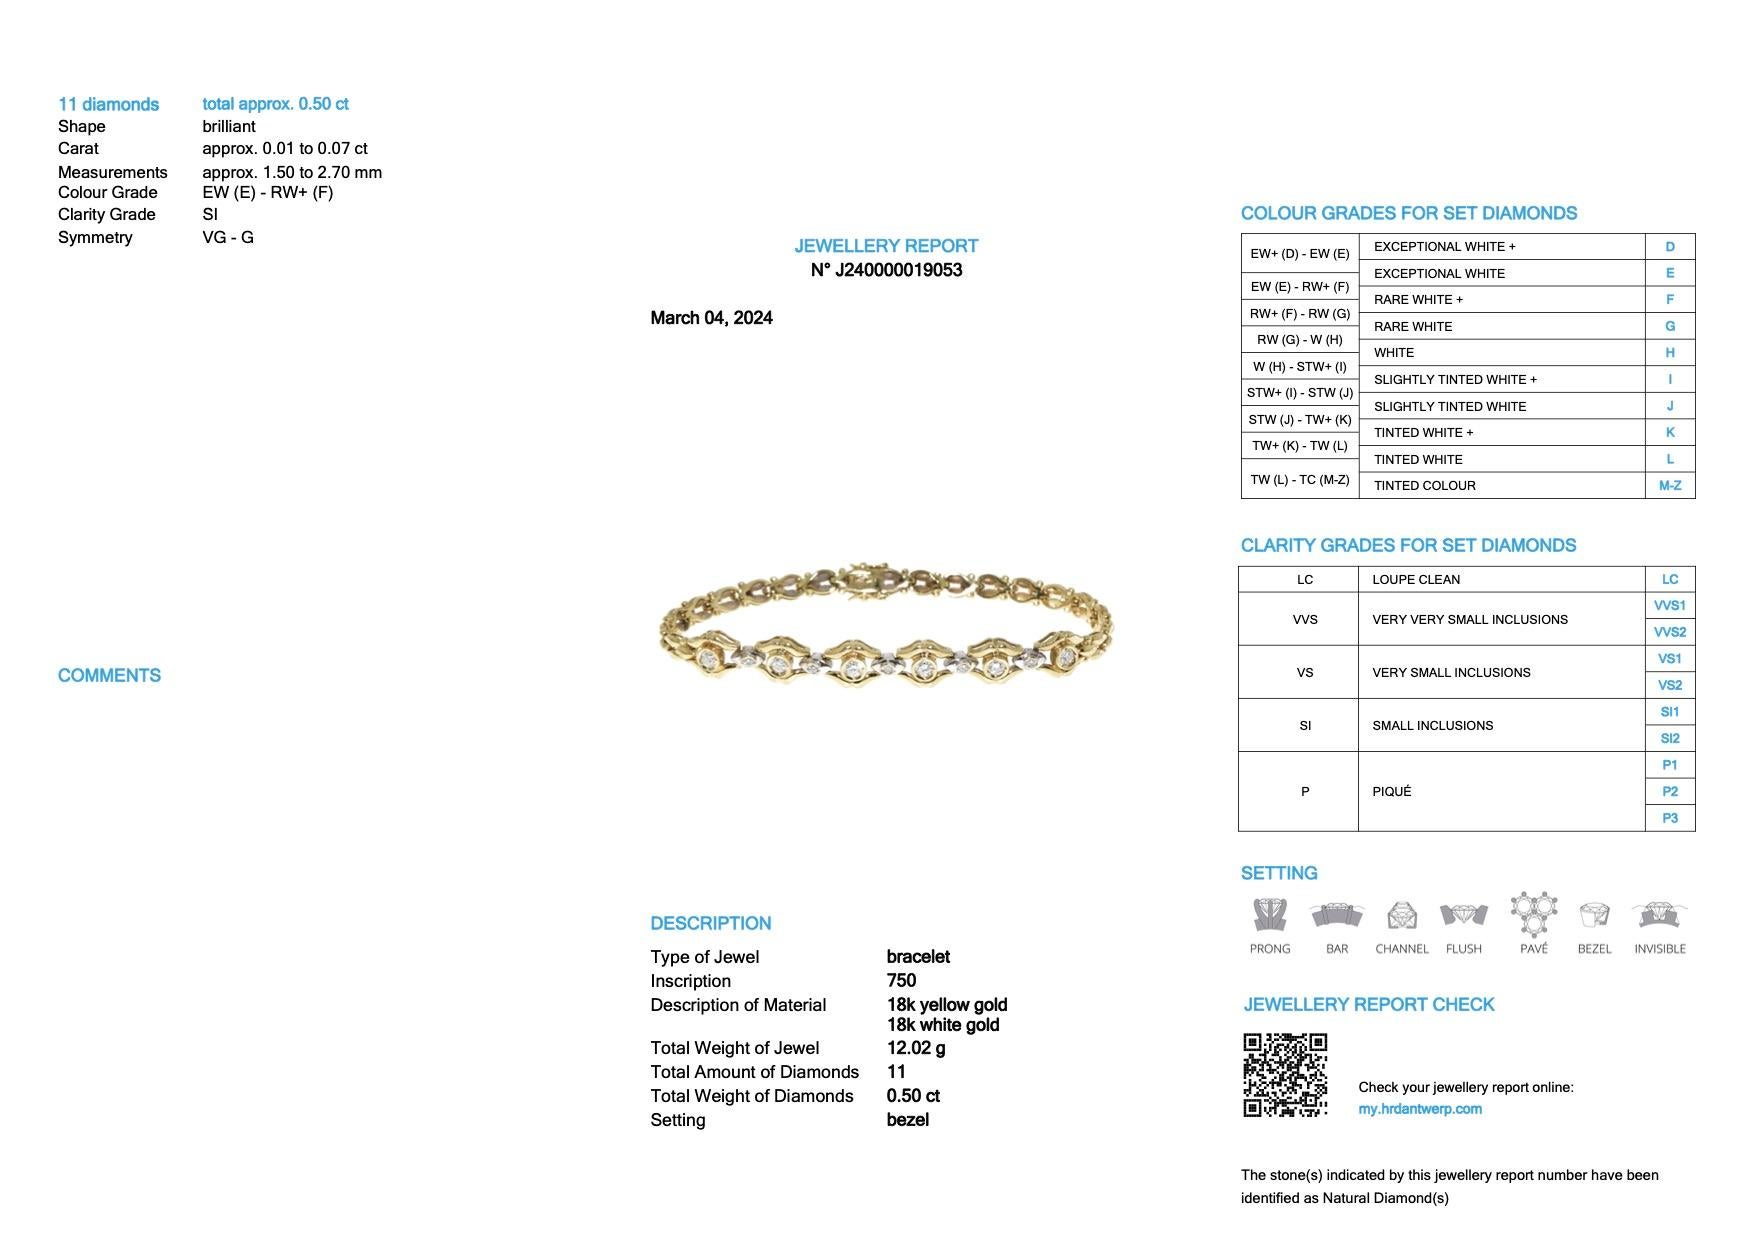 Das Retro-Goldarmband mit Diamanten, HRD-zertifiziert, ist ein atemberaubendes Schmuckstück, das Retro-Charme mit moderner Eleganz verbindet. Das aus 18 Karat Gelb- und Weißgold gefertigte Armband strahlt Raffinesse und Luxus aus und ist ein